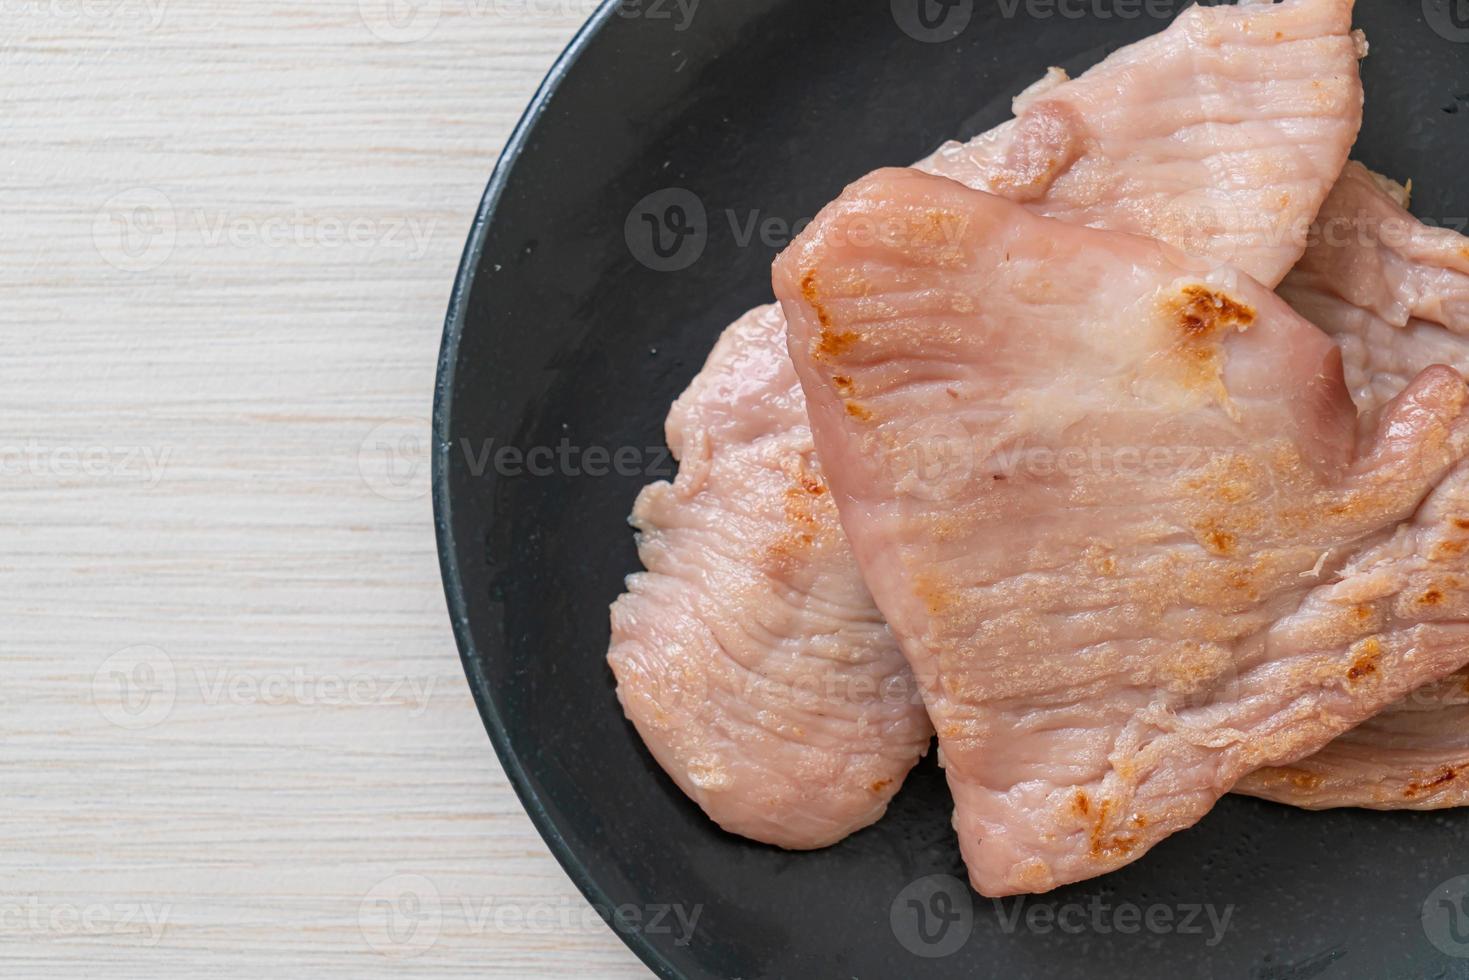 carne de porco seca ao sol frita no prato foto